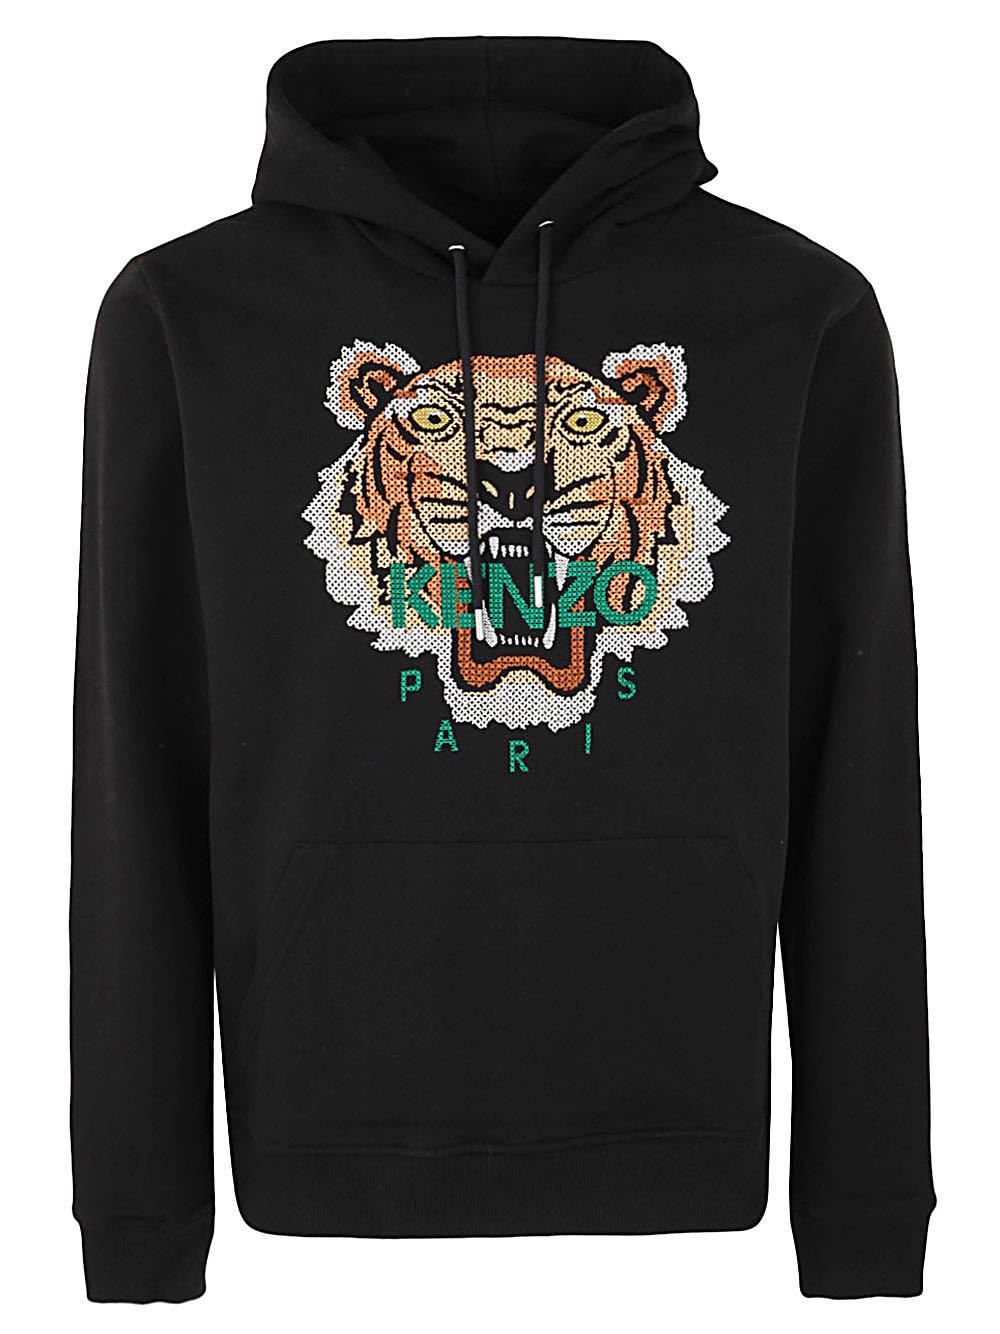 Tiger Sweatshirt for Kenzo  Tiger sweatshirt, Kenzo, Sweatshirts